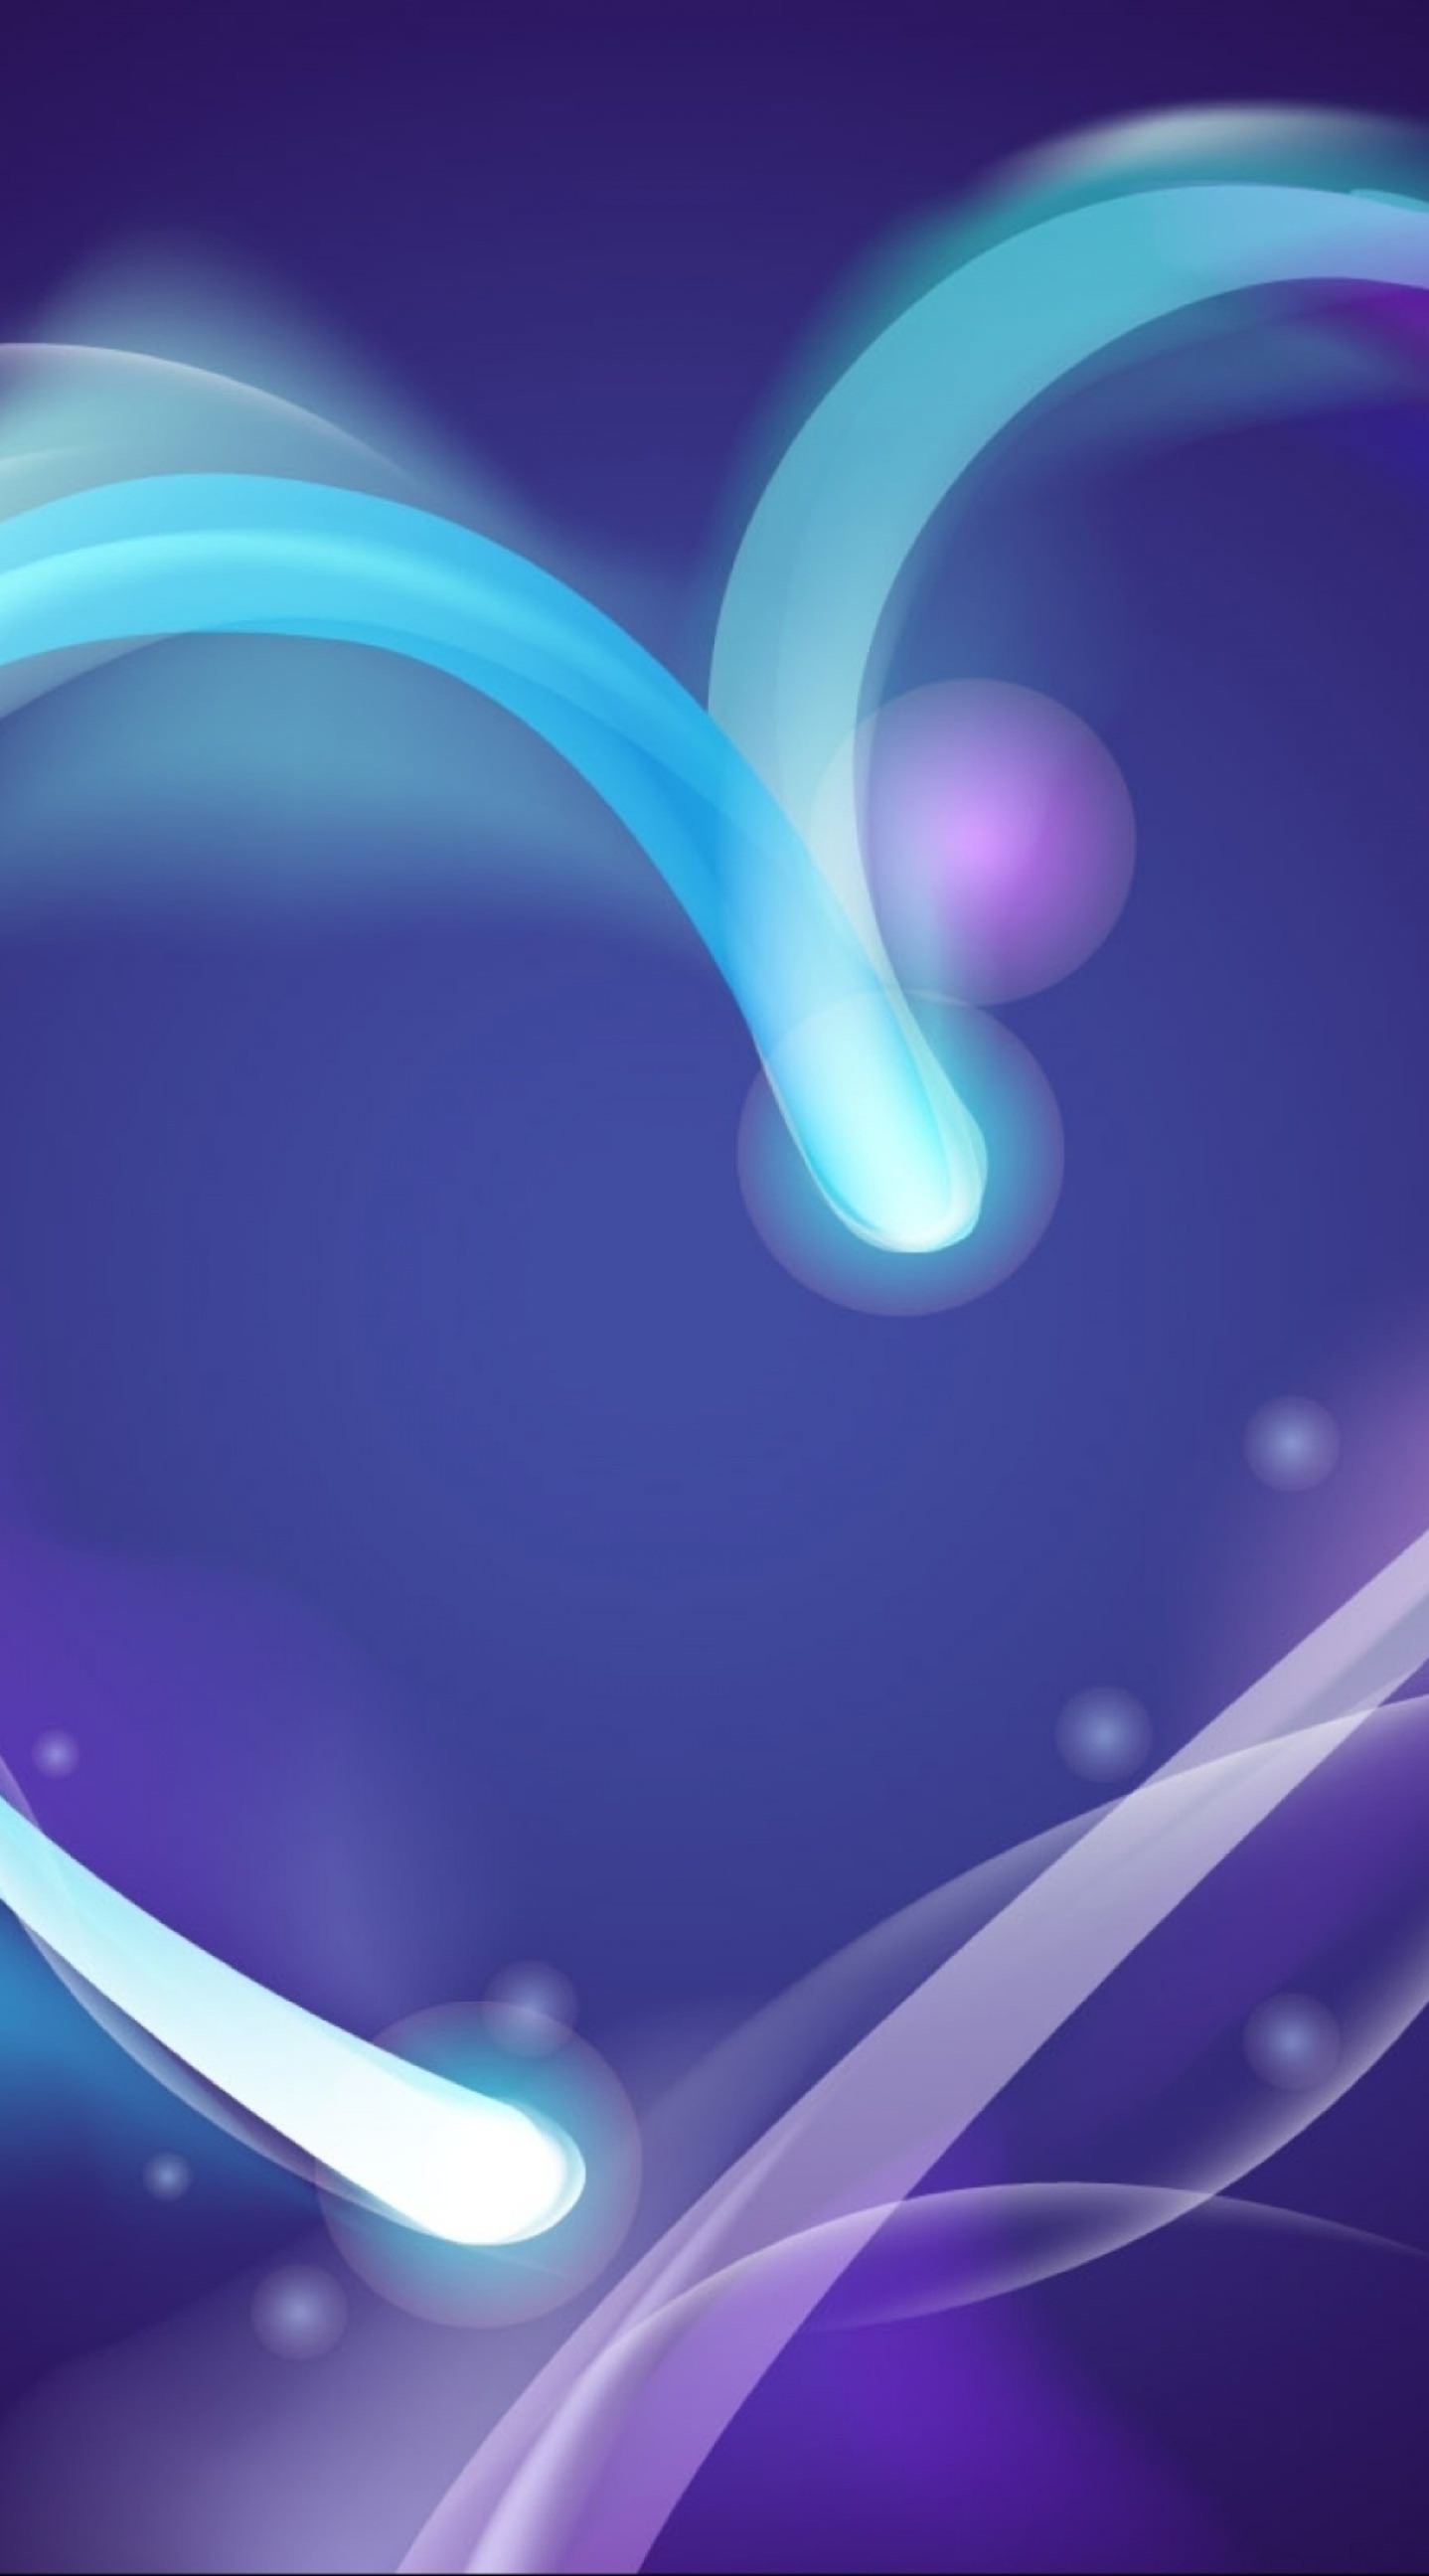 tapete im zusammenhang mit liebe,blau,violett,lila,licht,grafikdesign